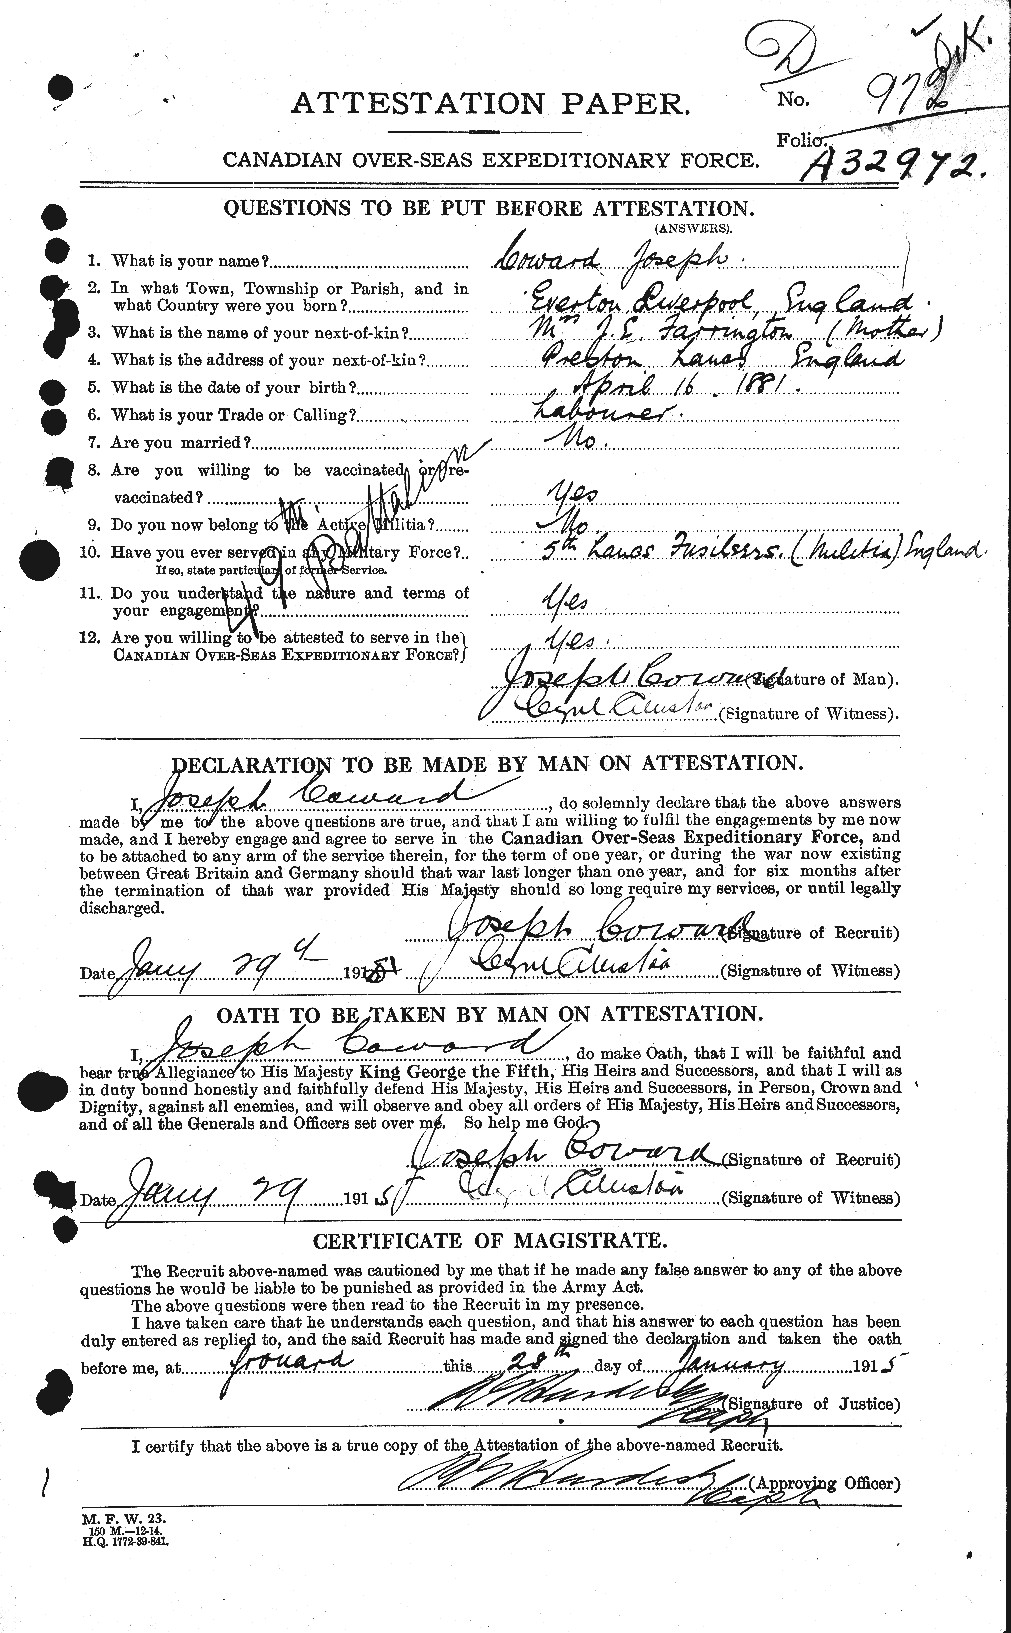 Dossiers du Personnel de la Première Guerre mondiale - CEC 057932a